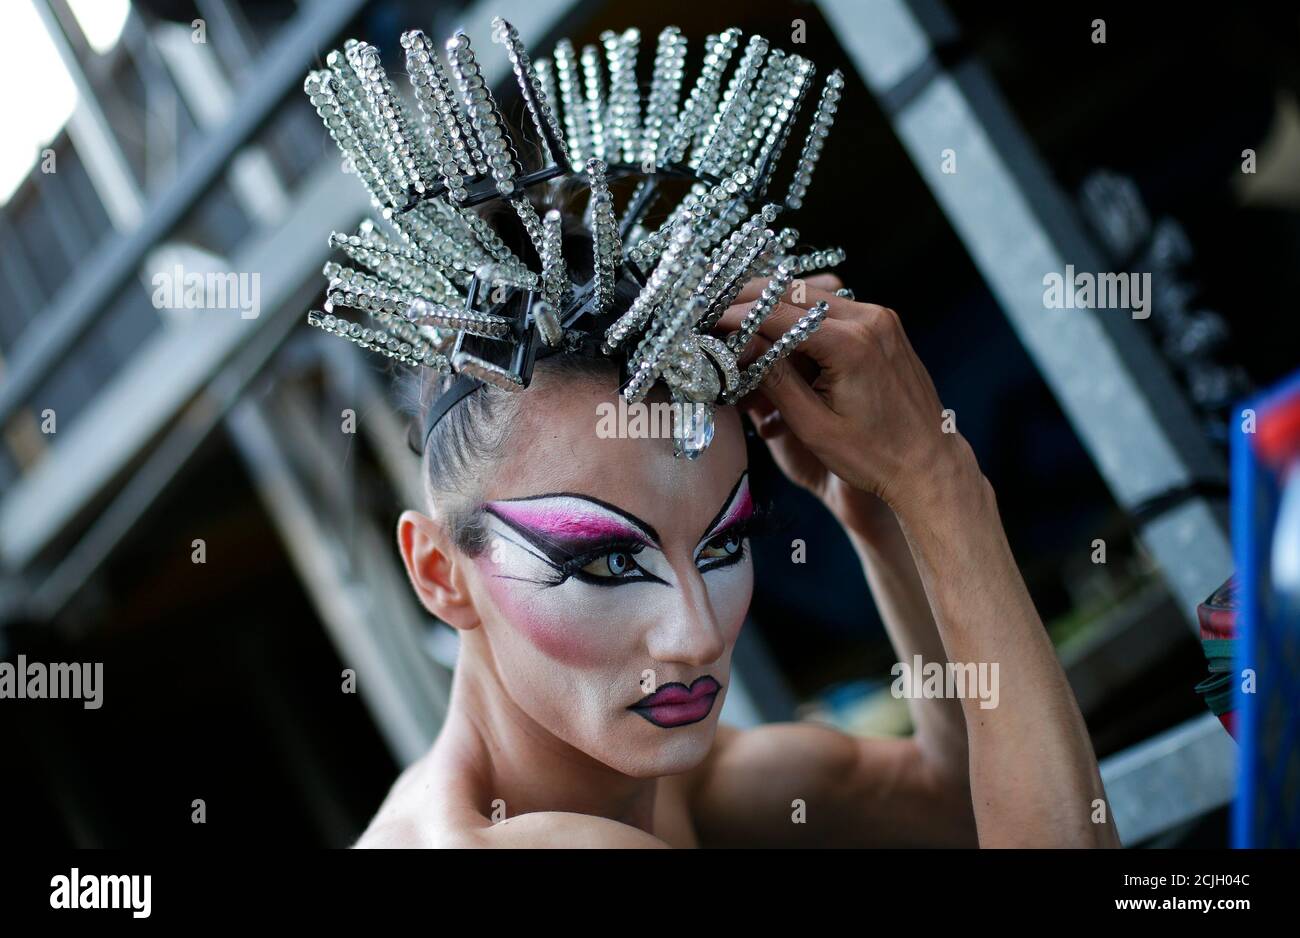 gözlere toz atmak arayüz Şaşkın drag queen parure - baobiducanh.com